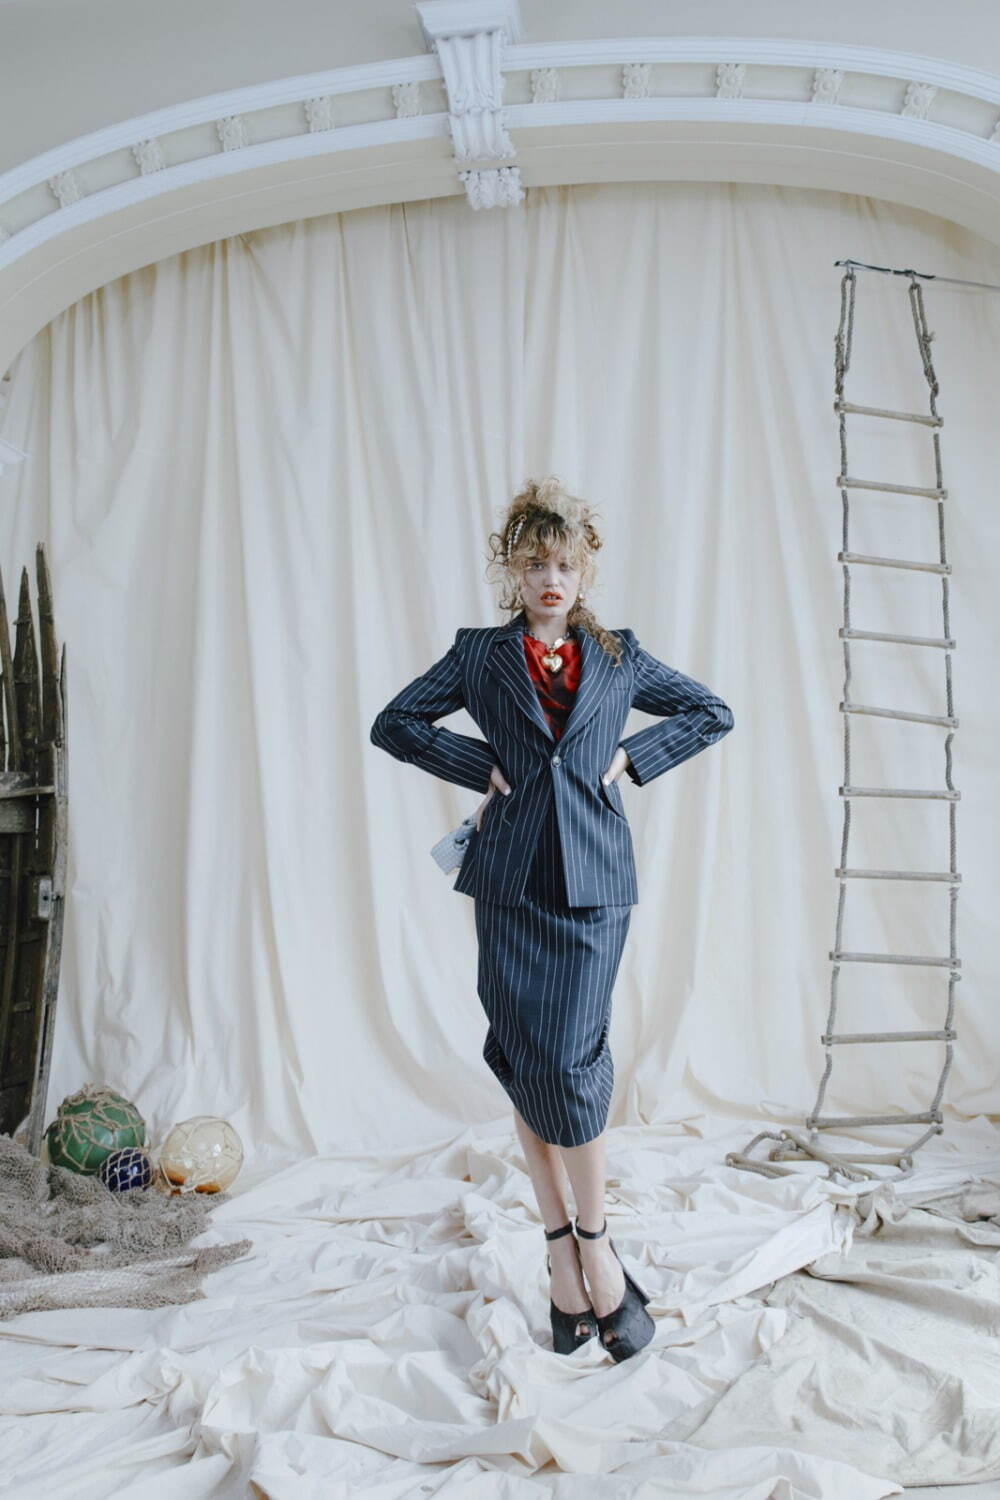 ヴィヴィアン・ウエストウッド(Vivienne Westwood) 2022年春夏ウィメンズ&メンズコレクション シルエット - 写真19